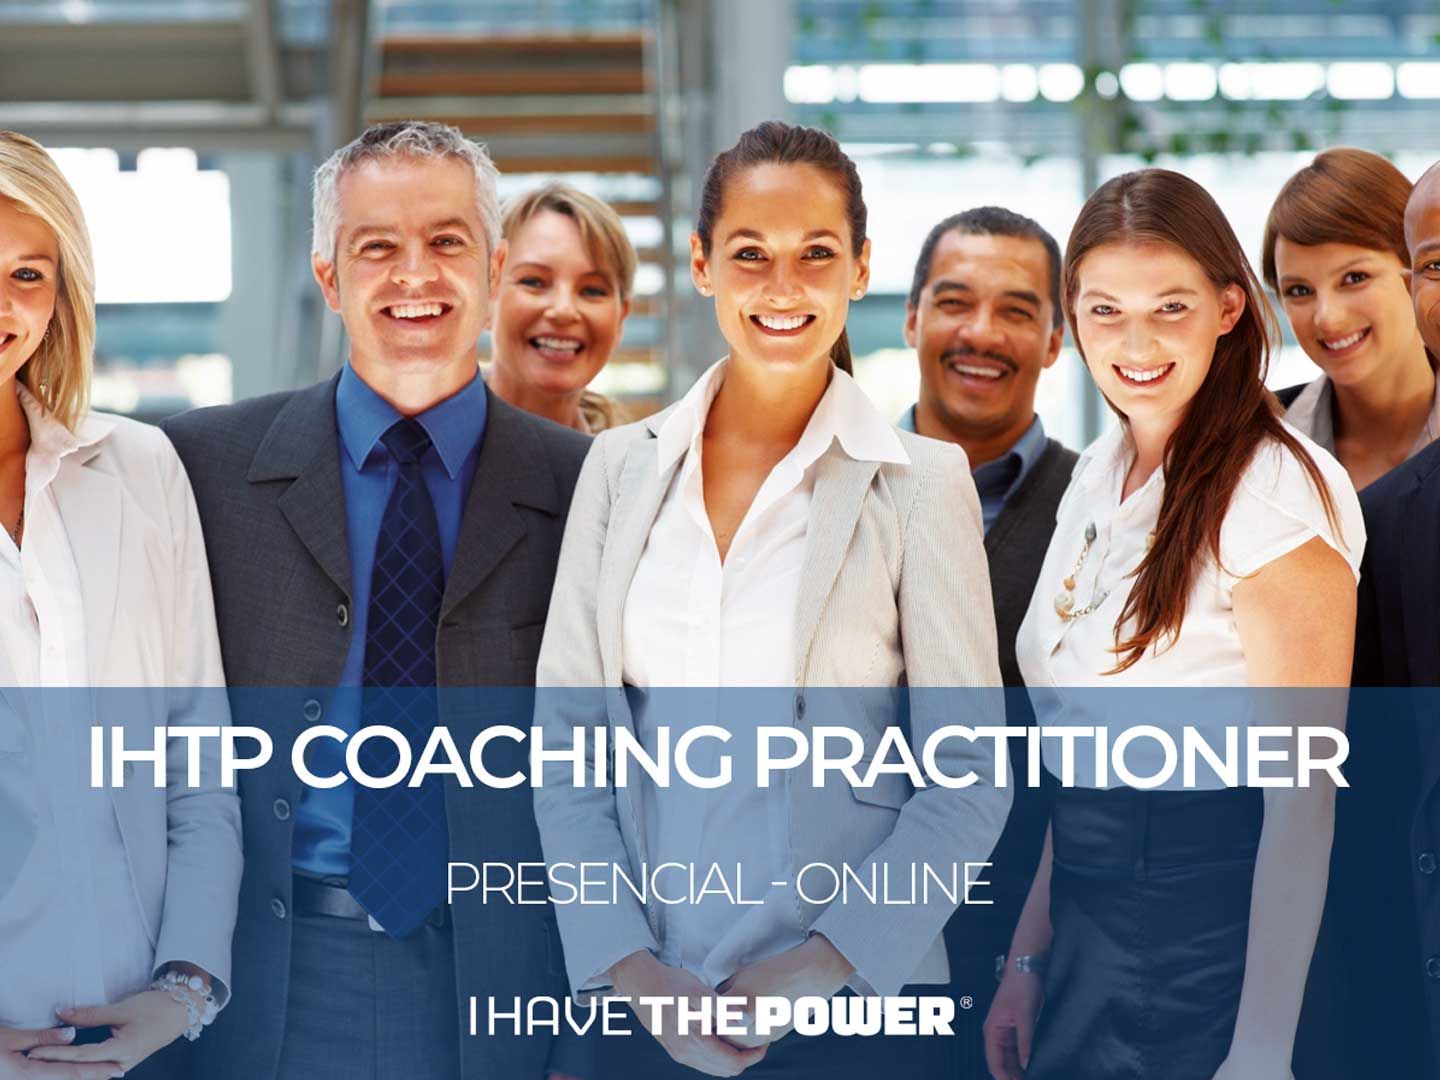 I Have the Power - Formação de Coaching para identificar e projectar elevados níveis de desempenho pessoal e profissional, aplicando a Metodologia da association for Coaching